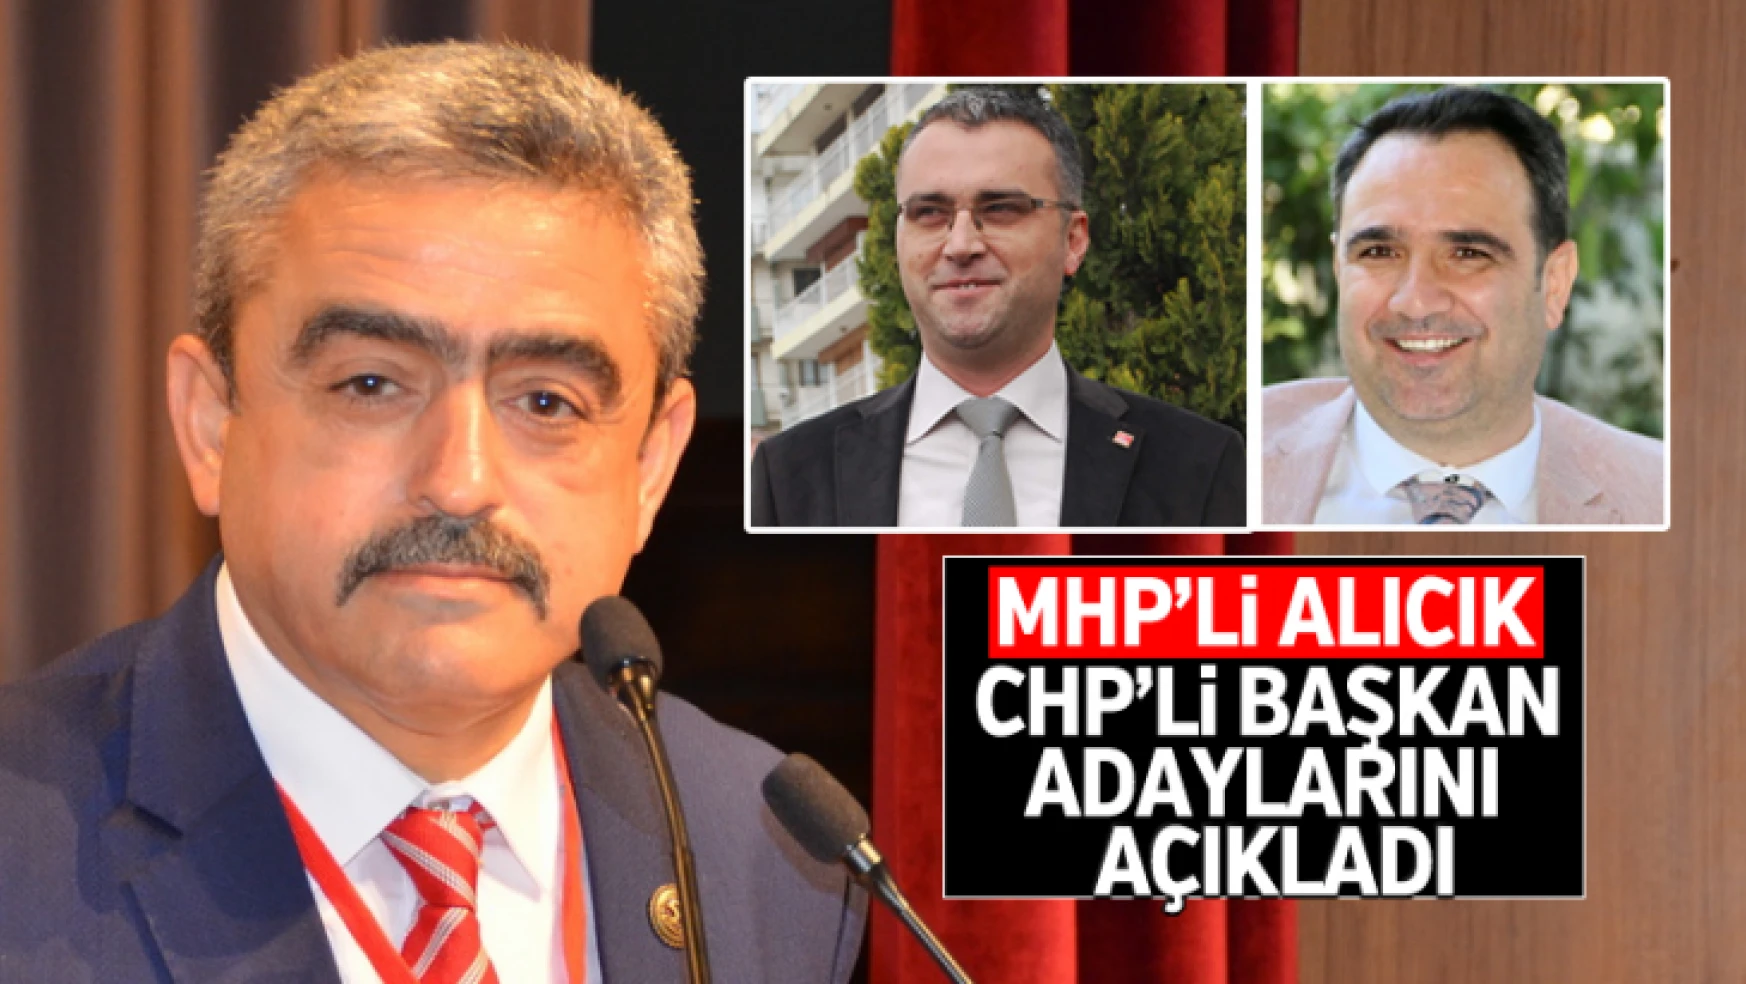 MHP'li Alıcık, CHP'li başkan adaylarını açıkladı